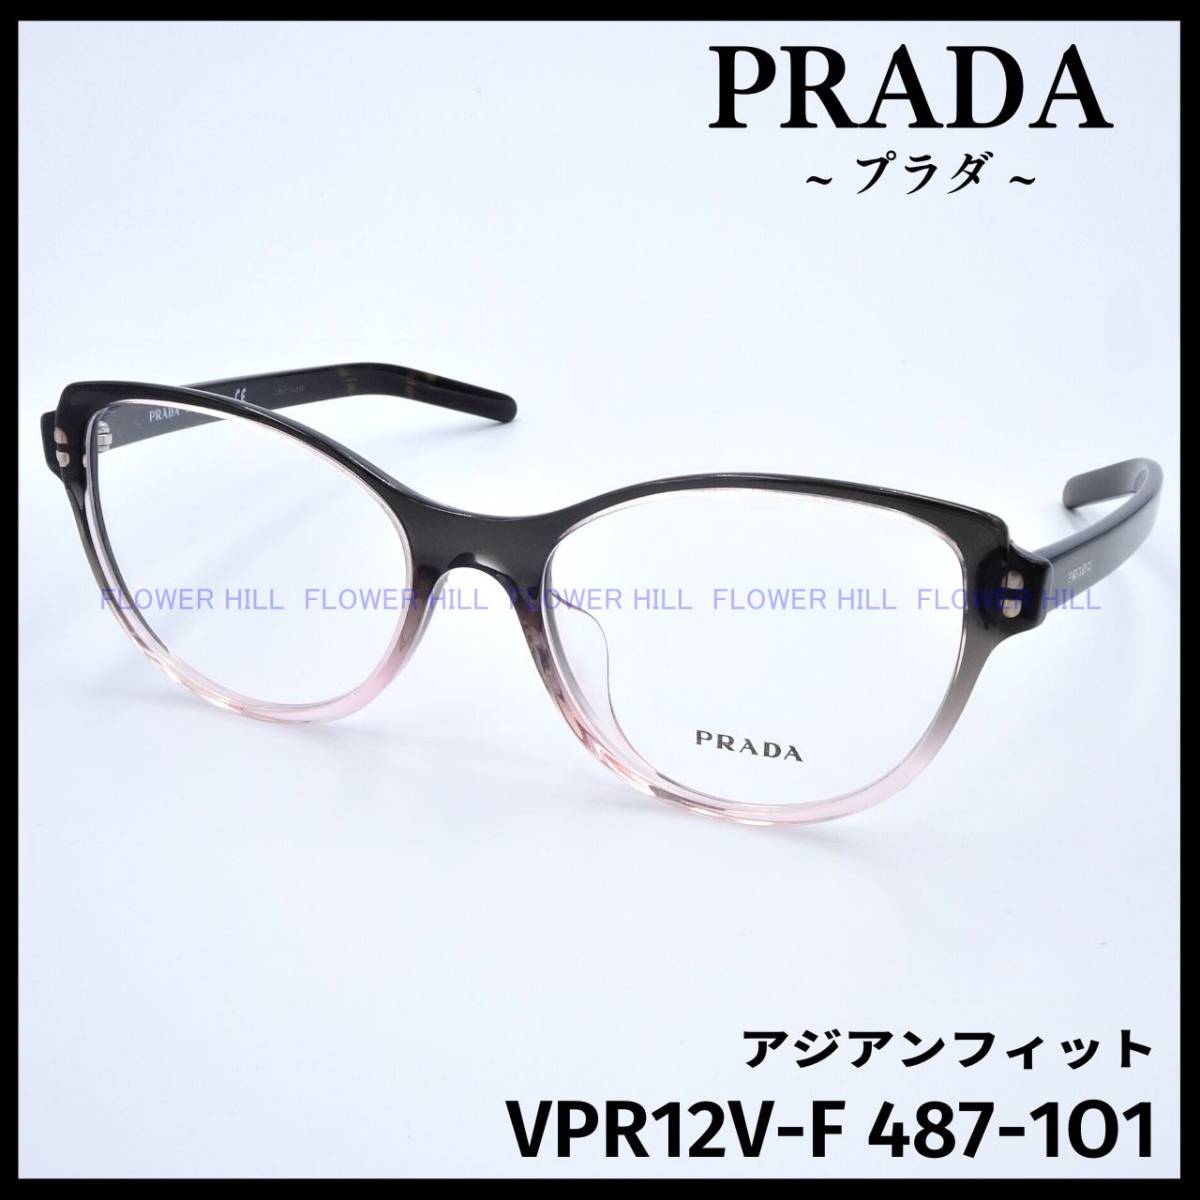 【新品・送料無料】プラダ PRADA VPR12V-F 487-1O1 メガネ フレーム アジアンフィット グラデーションピンク イタリア製 メンズ  レディース